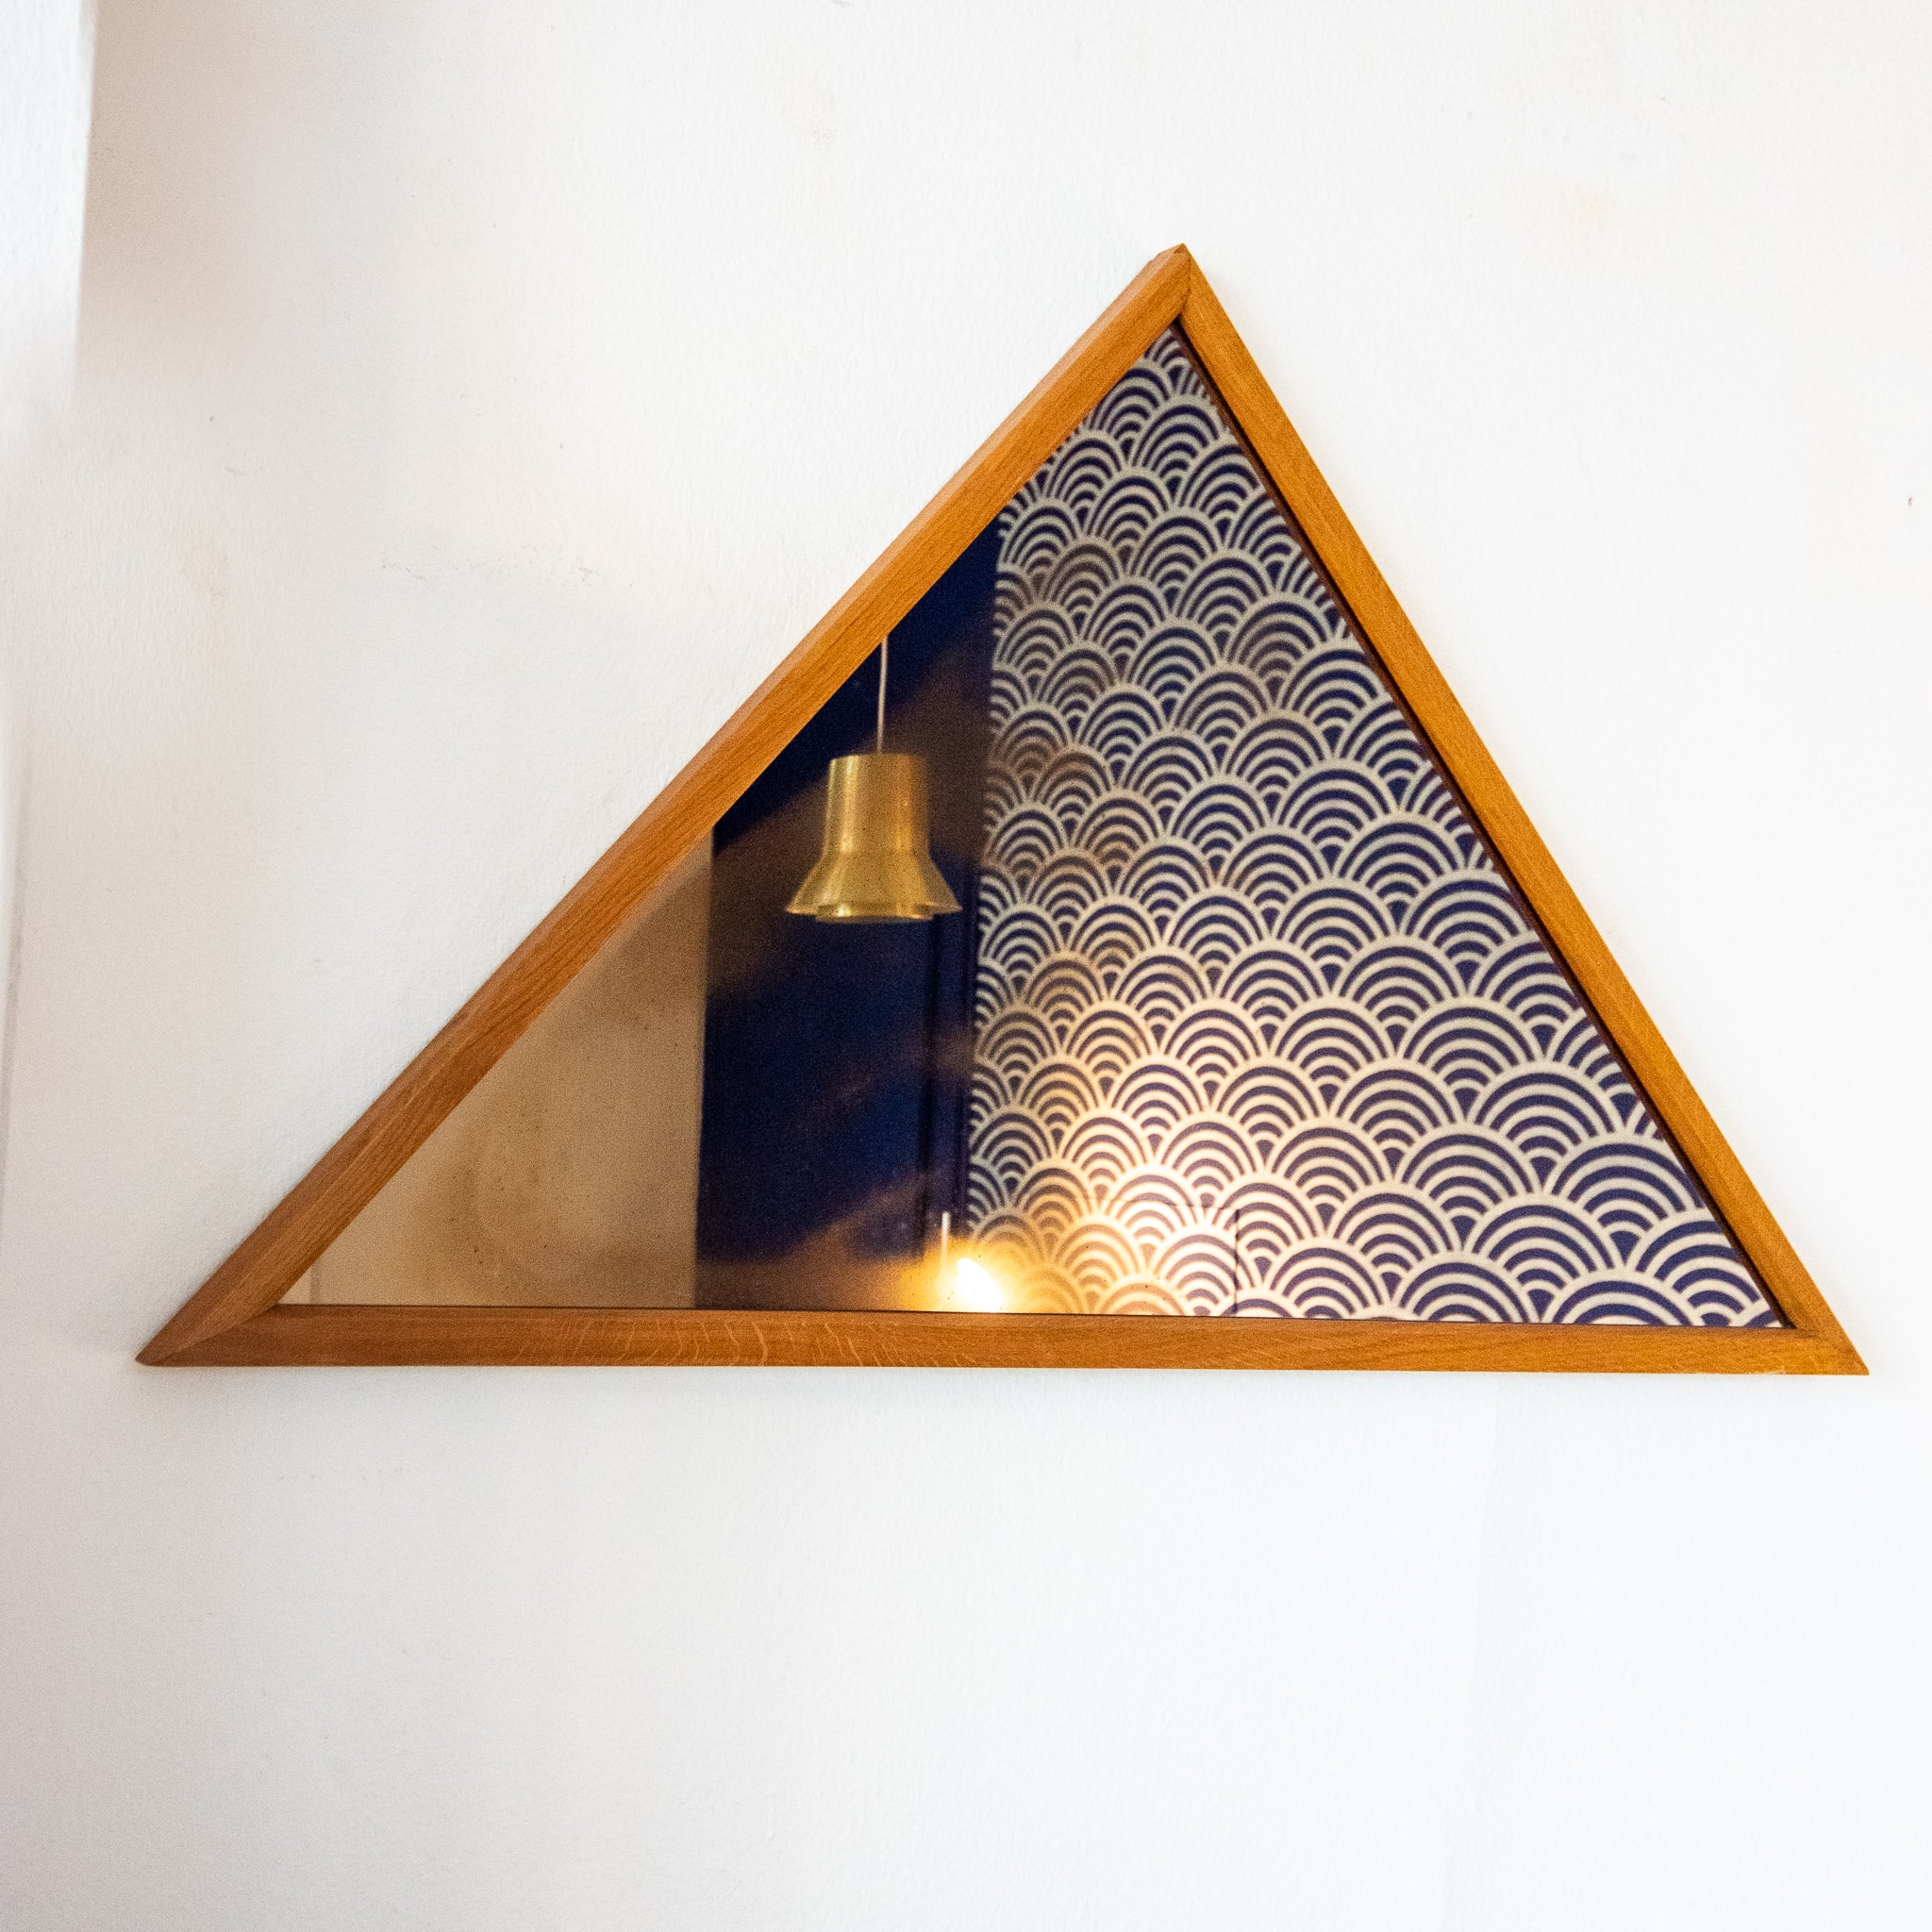 Triangular mirror